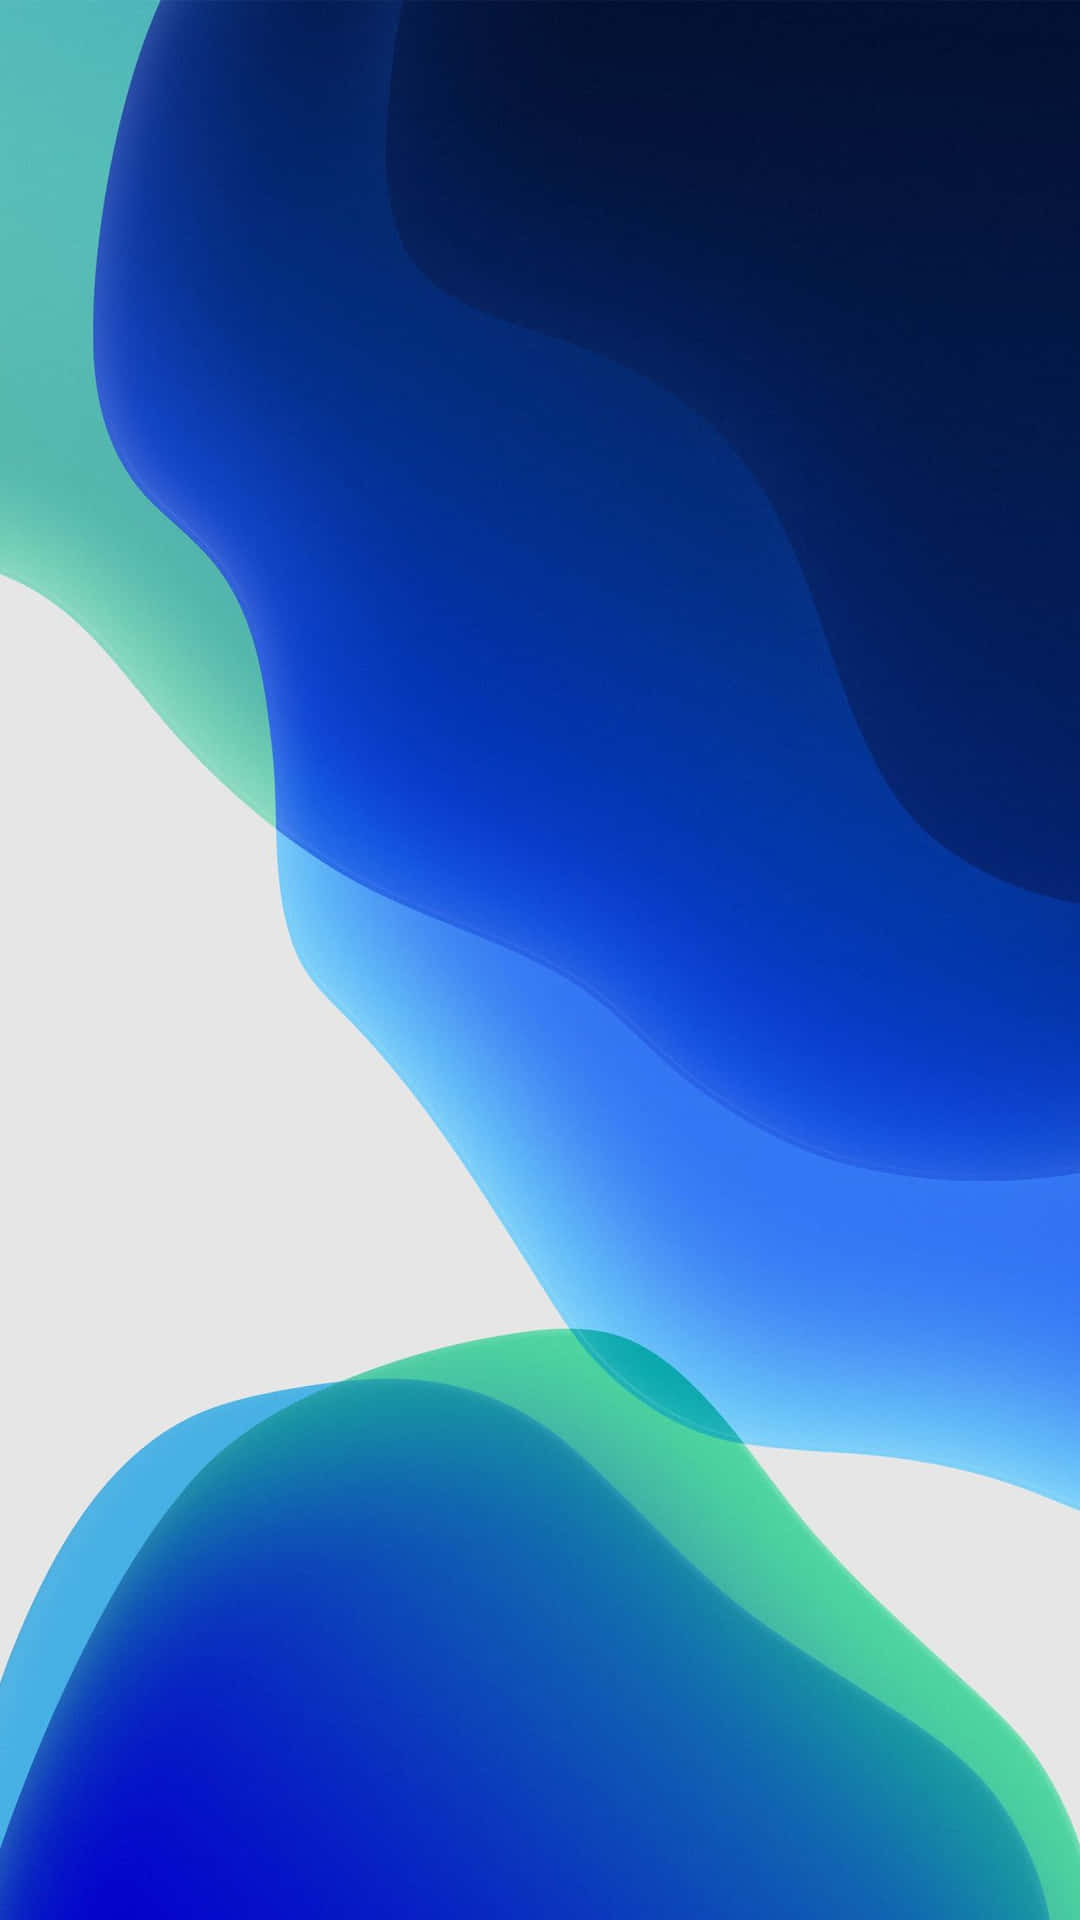 Iphonexr En Stock, En Los Colores Azul, Verde Y Blanco. Fondo de pantalla